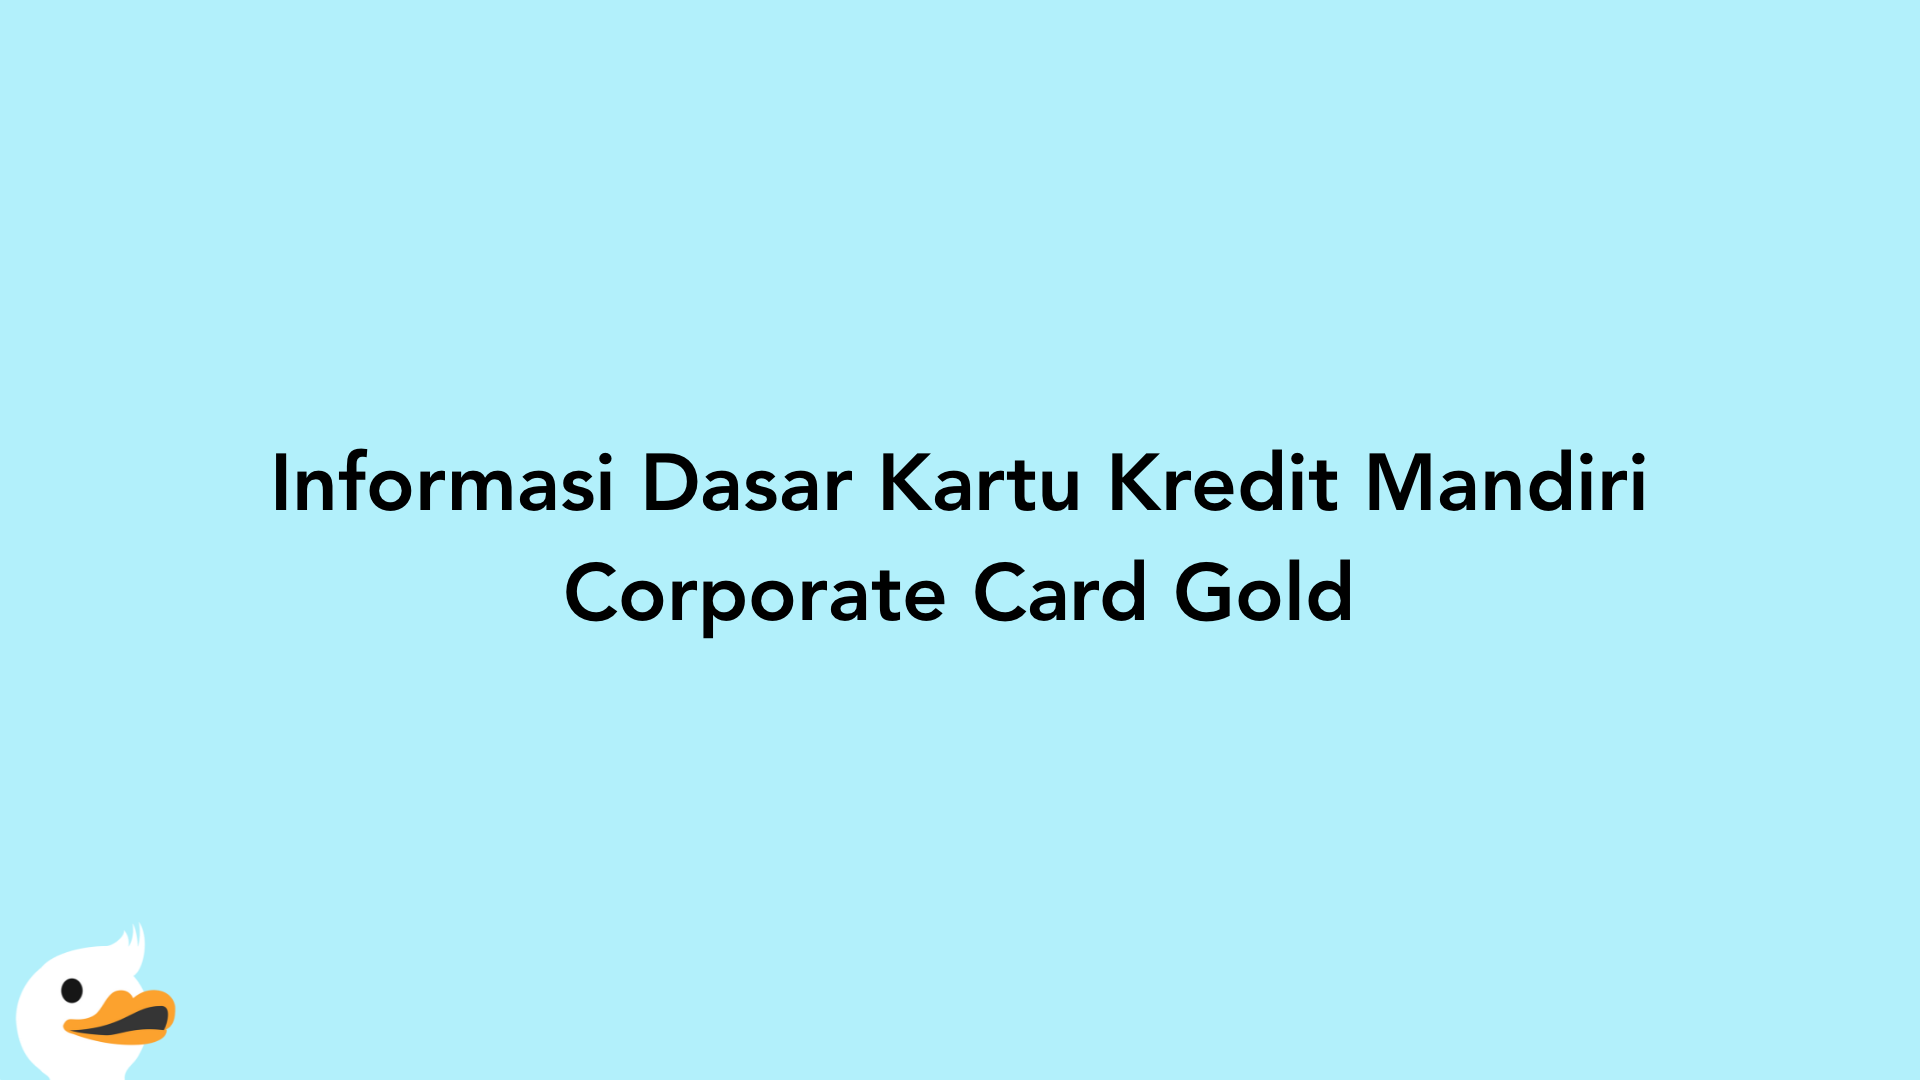 Informasi Dasar Kartu Kredit Mandiri Corporate Card Gold